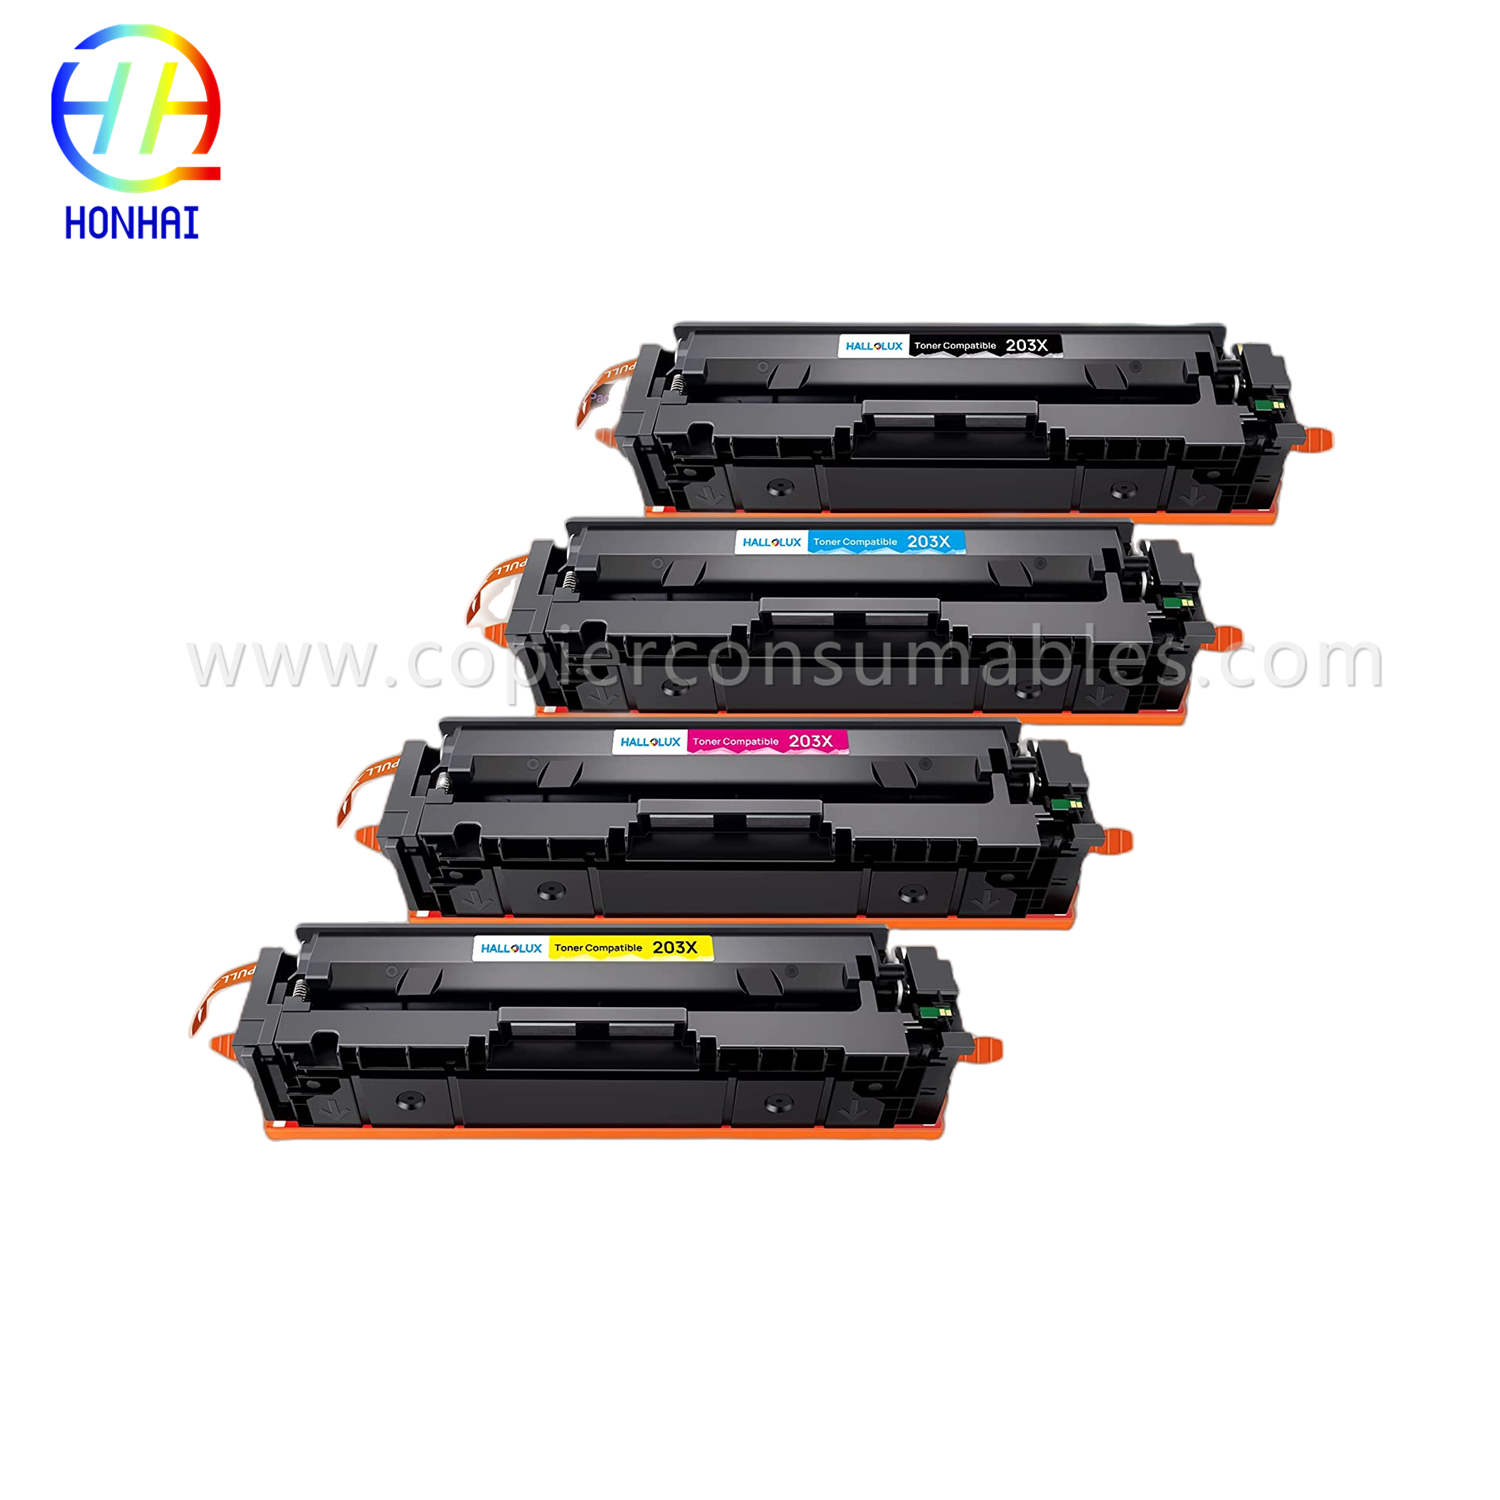 https://www.copierhonhaitech.com/toner-cartridge-for-hp-colour-laserjet-pro-m254dn-m254dw-m254nw-m280nw-m281cdw-m281fdn-m281fdw-203a-cf543a-oem-product/